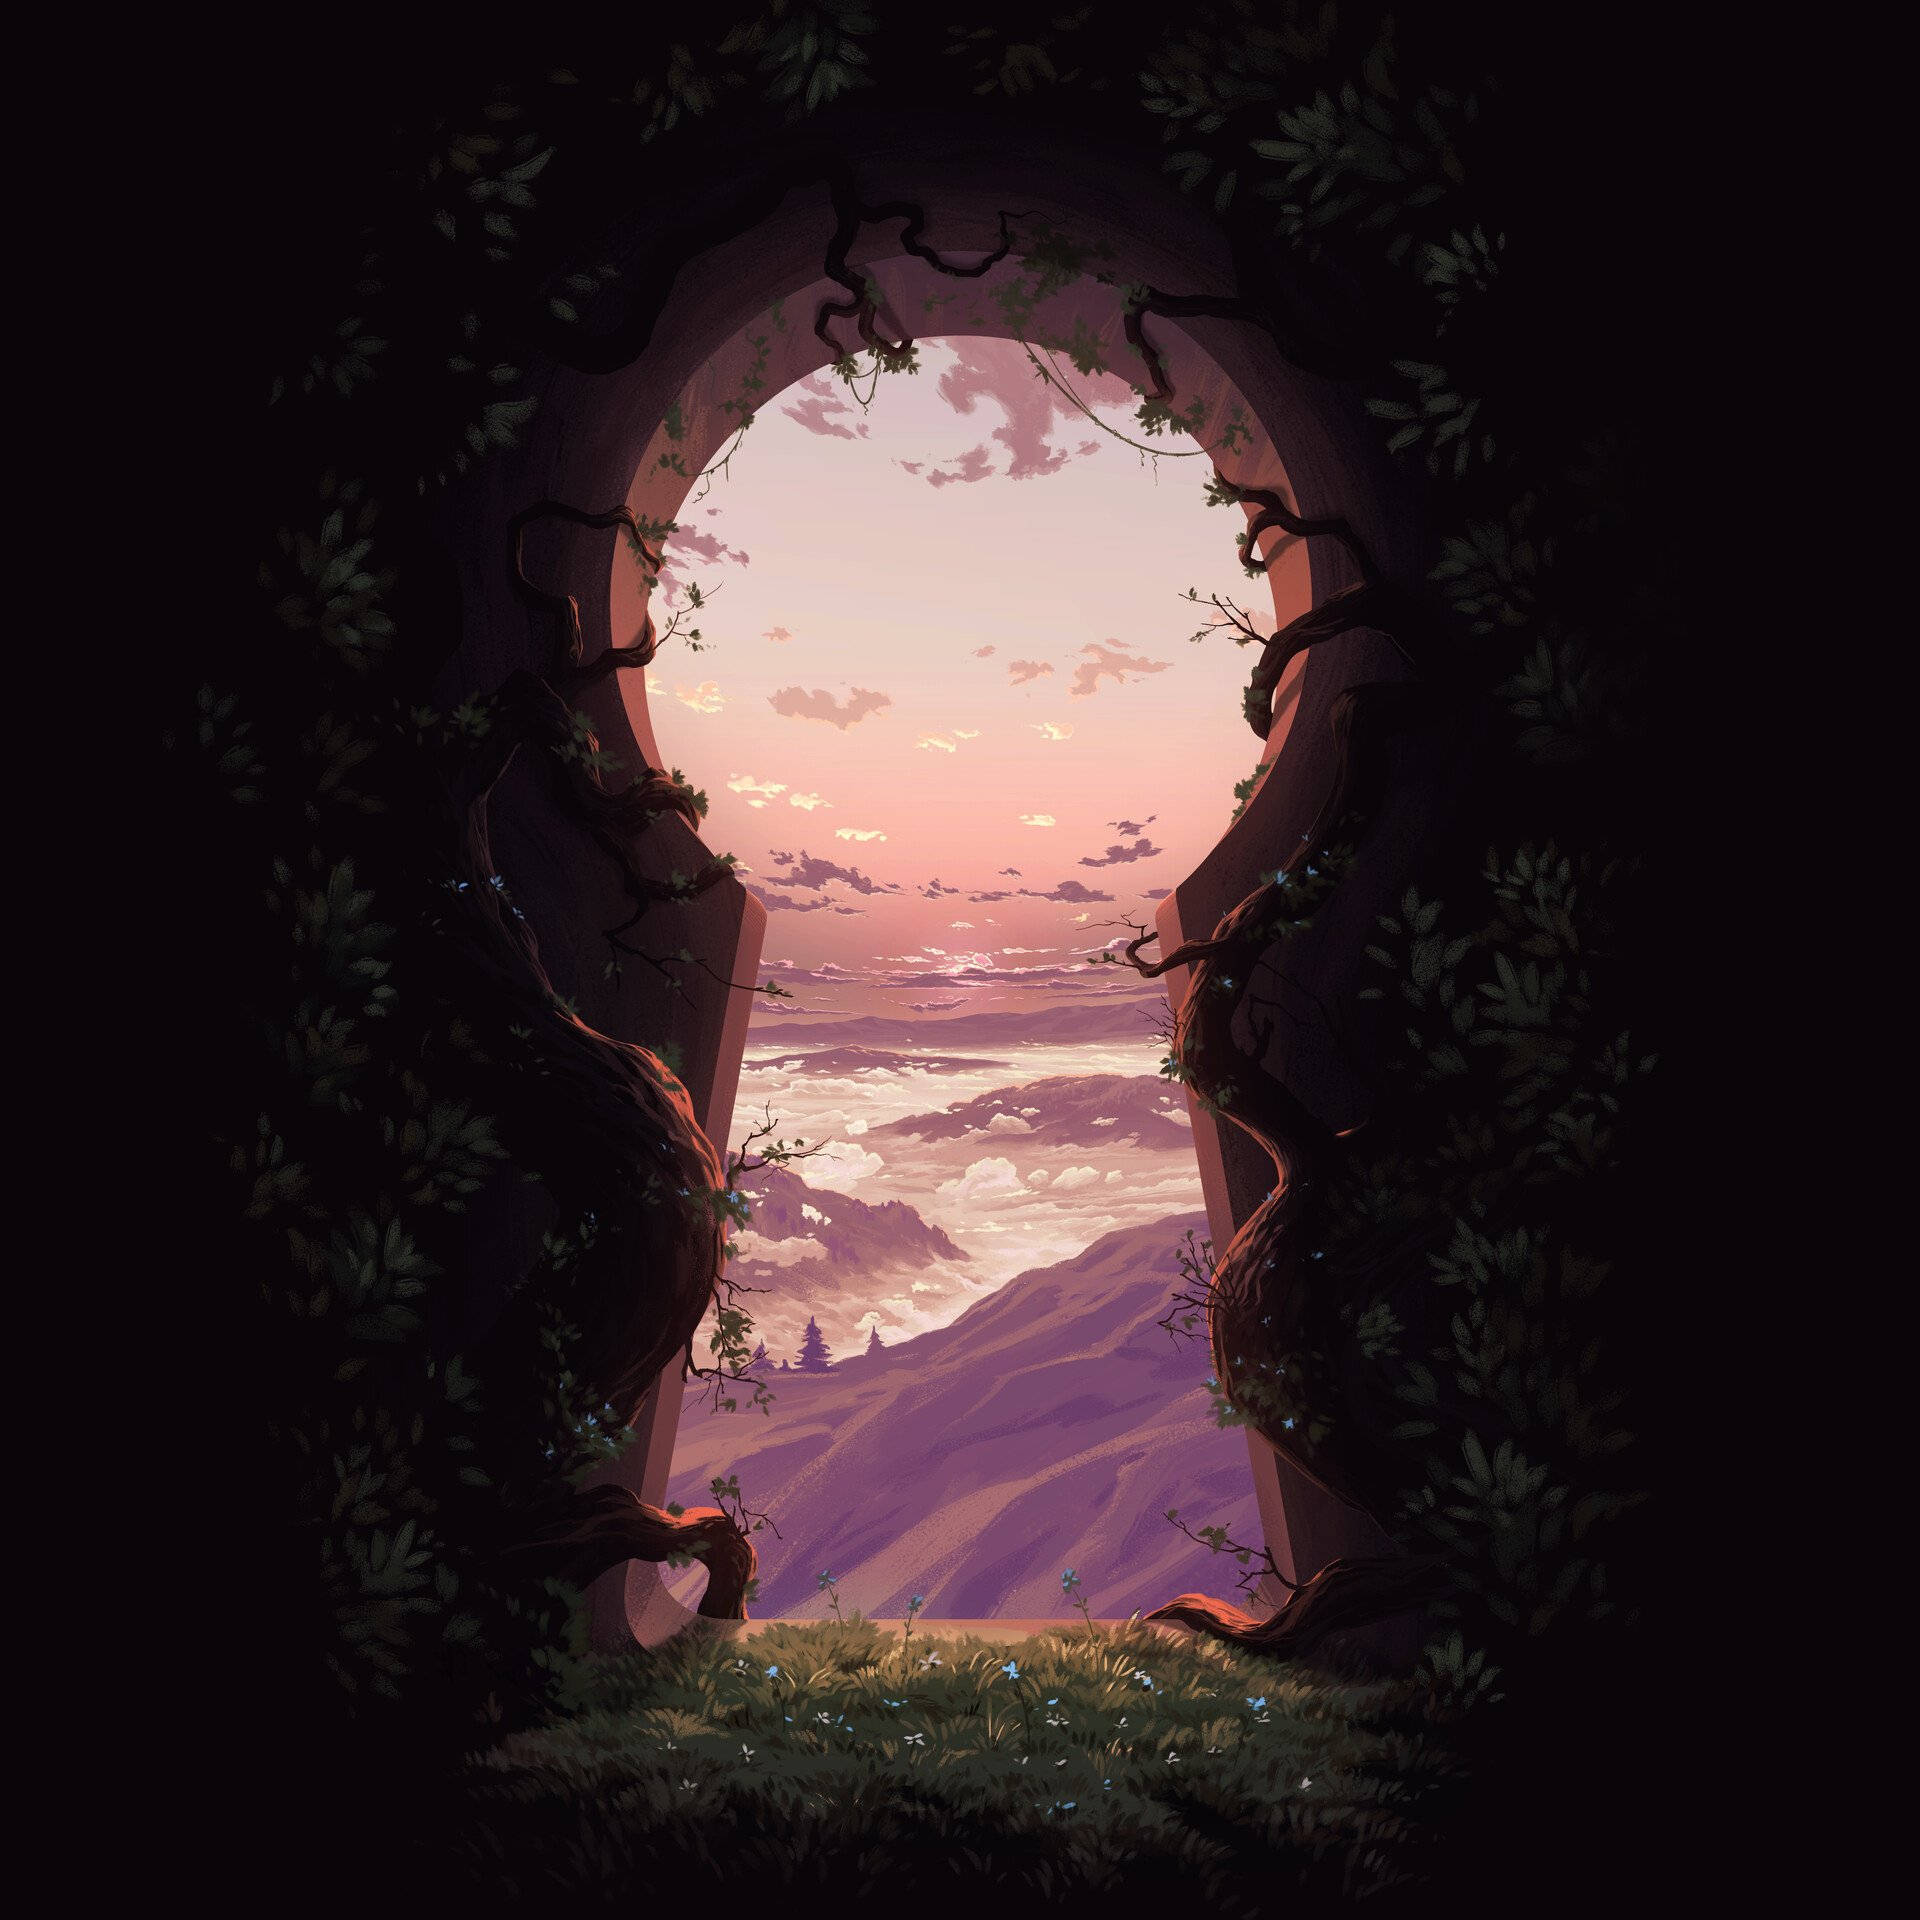 Sunset Mountain View Through Key Opening Wallpaper